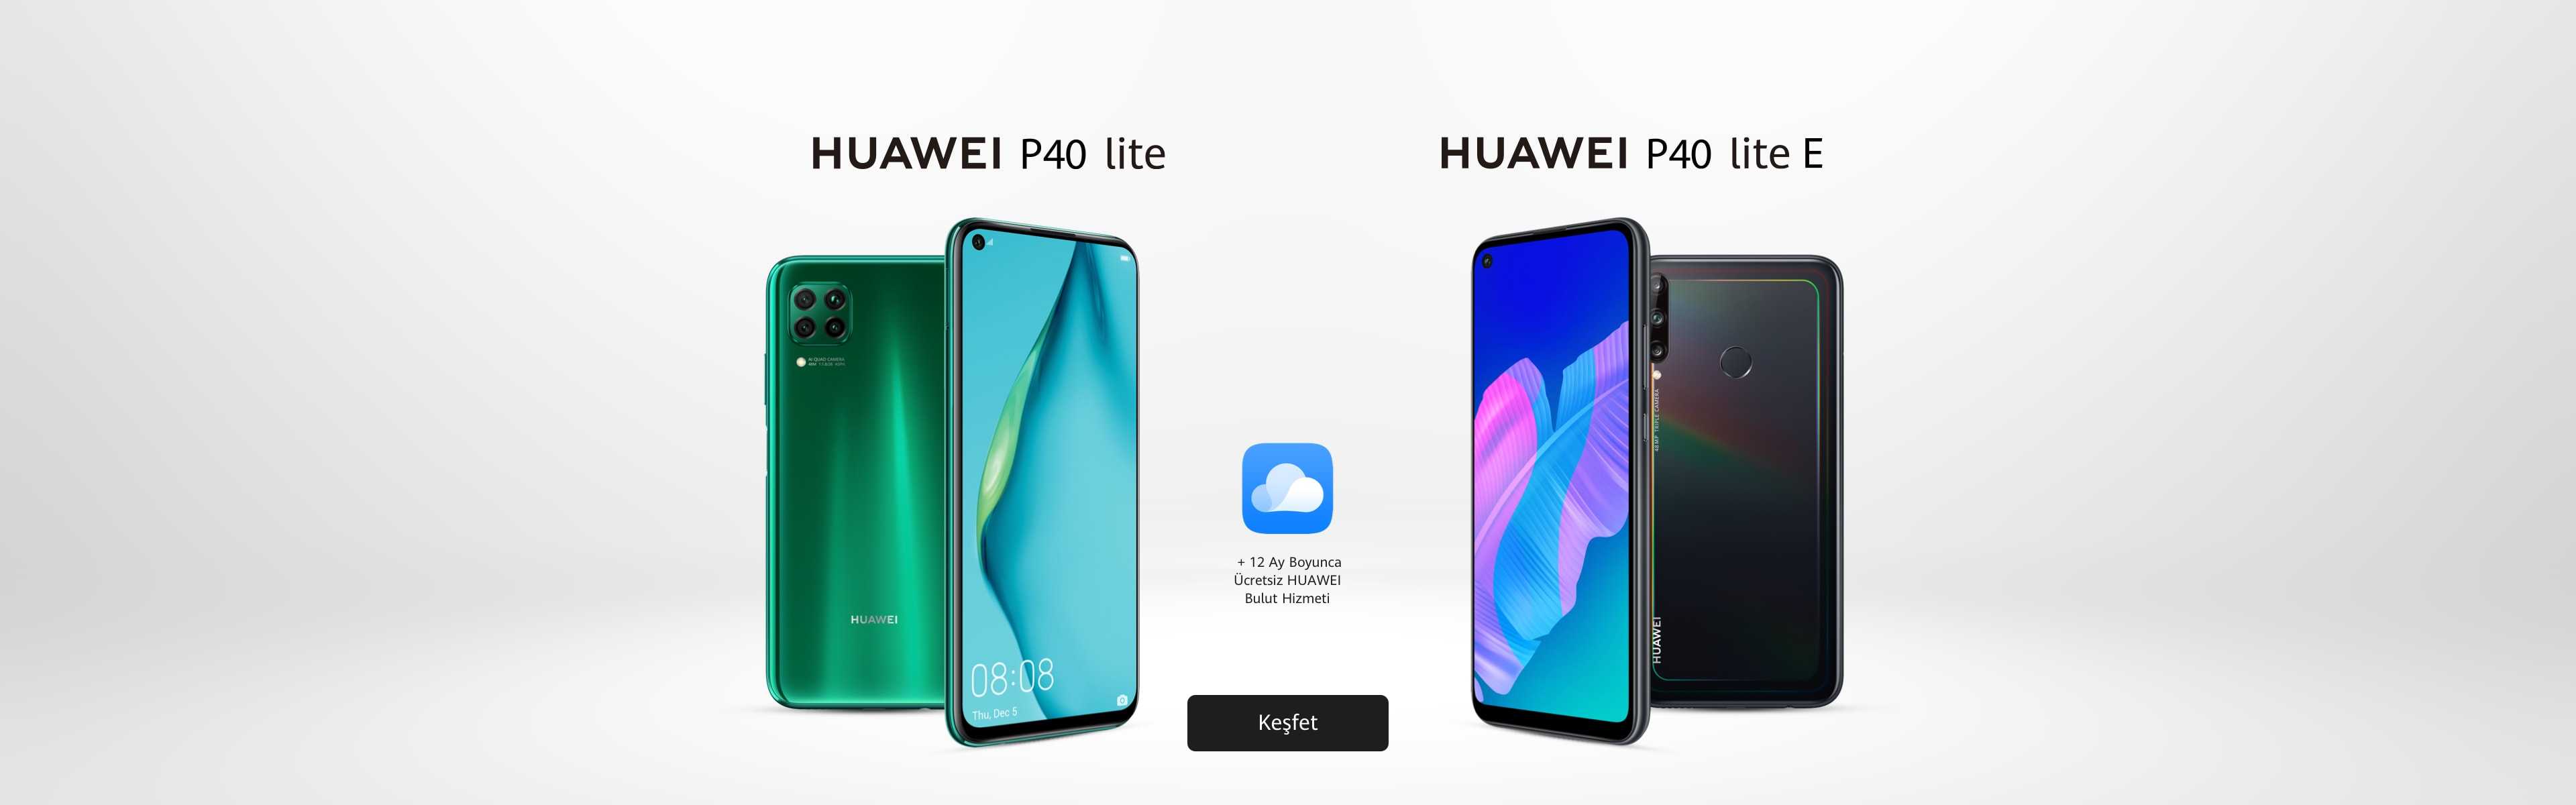 Обзор смартфонов huawei p10, p10 plus и p10 lite: что не так?